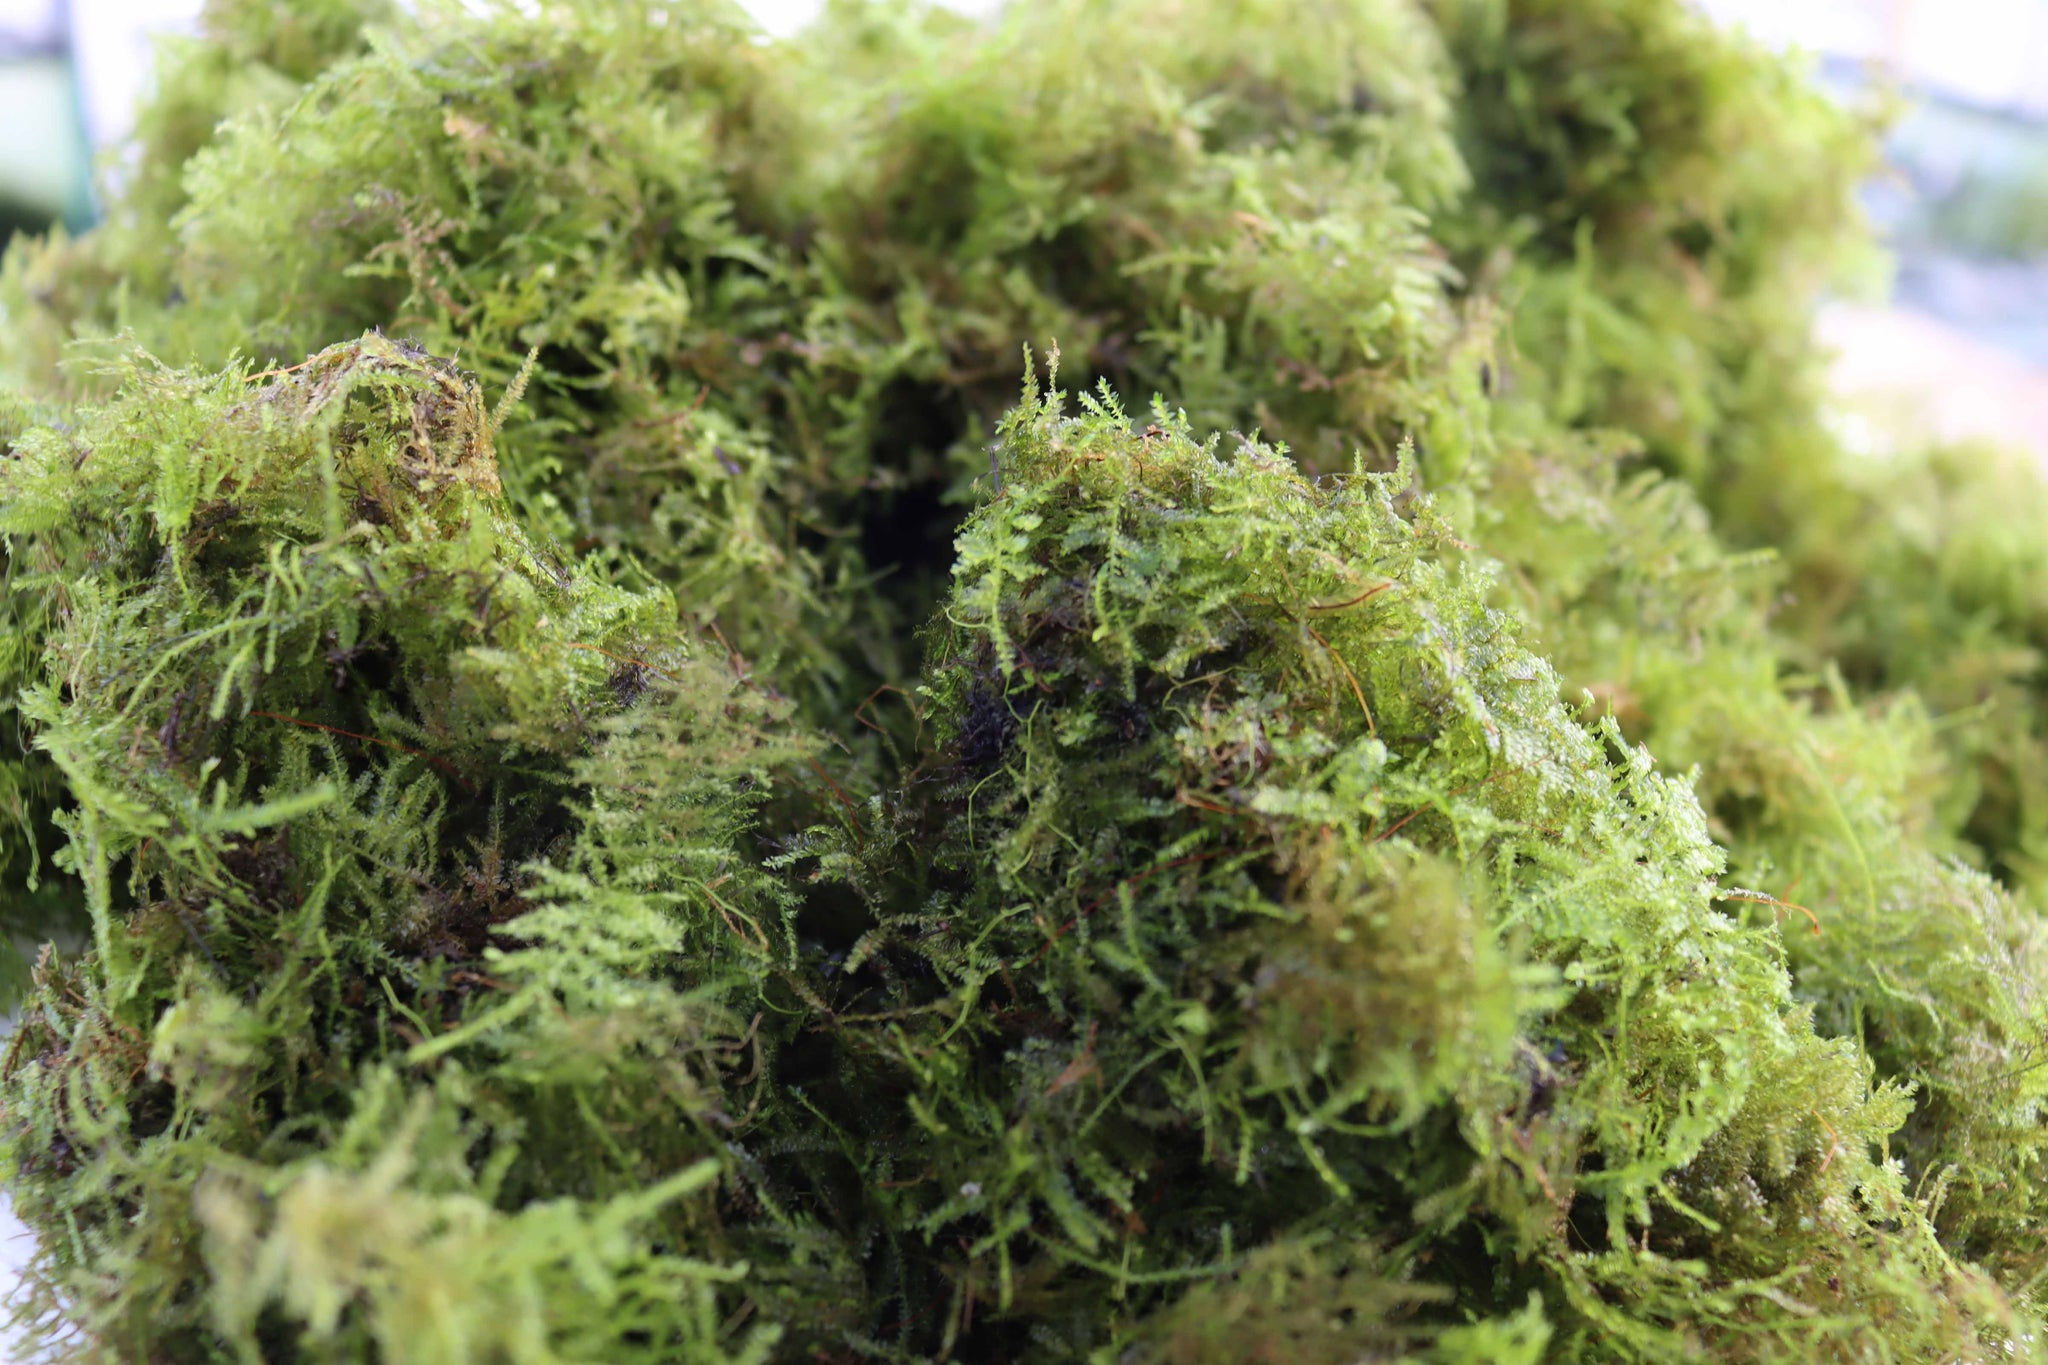 Christmas Moss -Versicularia daubenyana – DustinsFishtanks